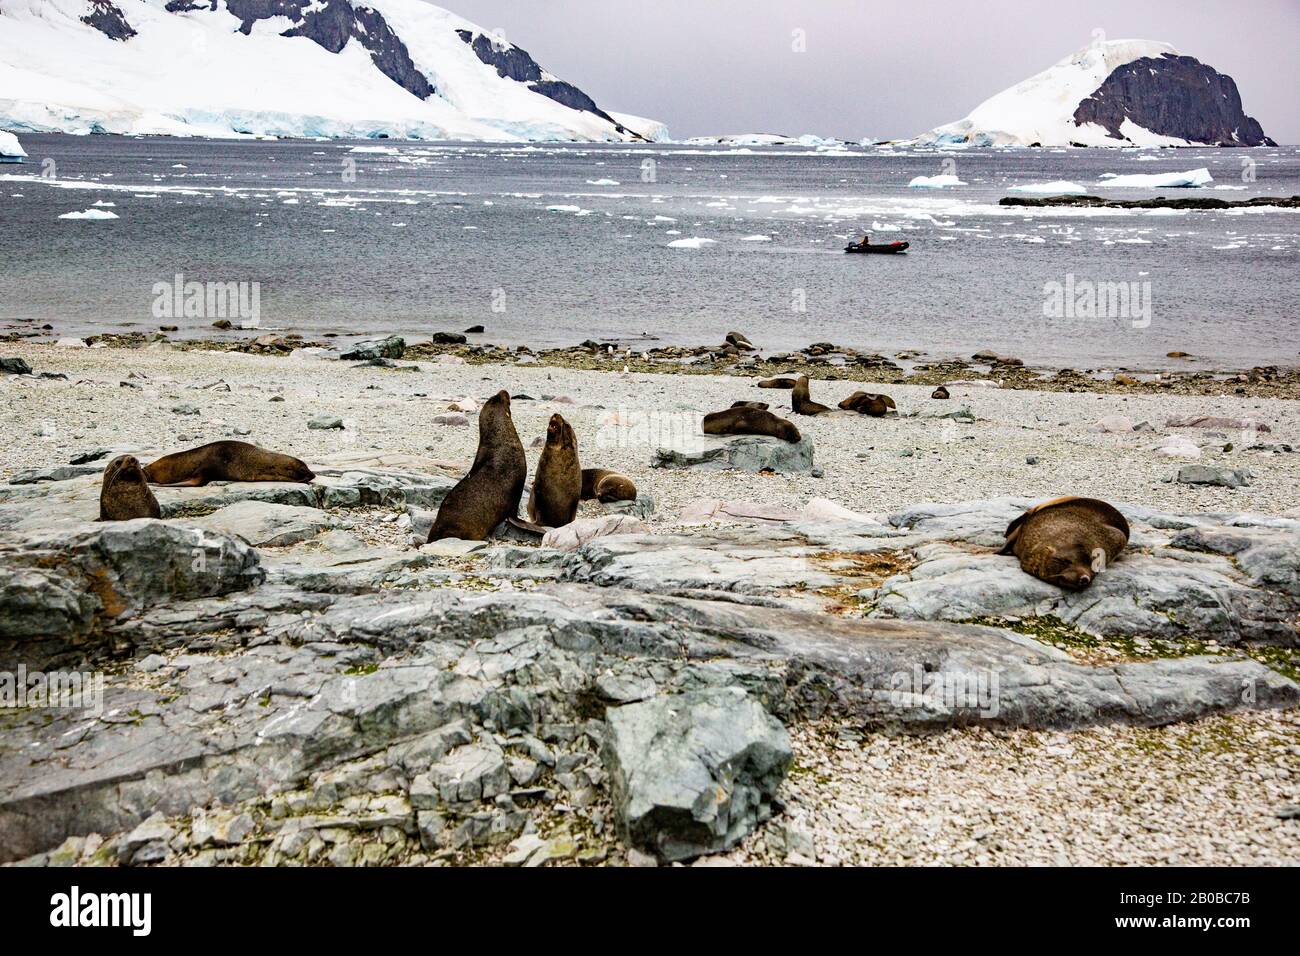 Colonia di otarie antartiche (Arctocephalus gazella) su una costa rocciosa. Il sigillo antartico si nutre principalmente di krill, ma mangia anche calamari e pesci. Foto Stock